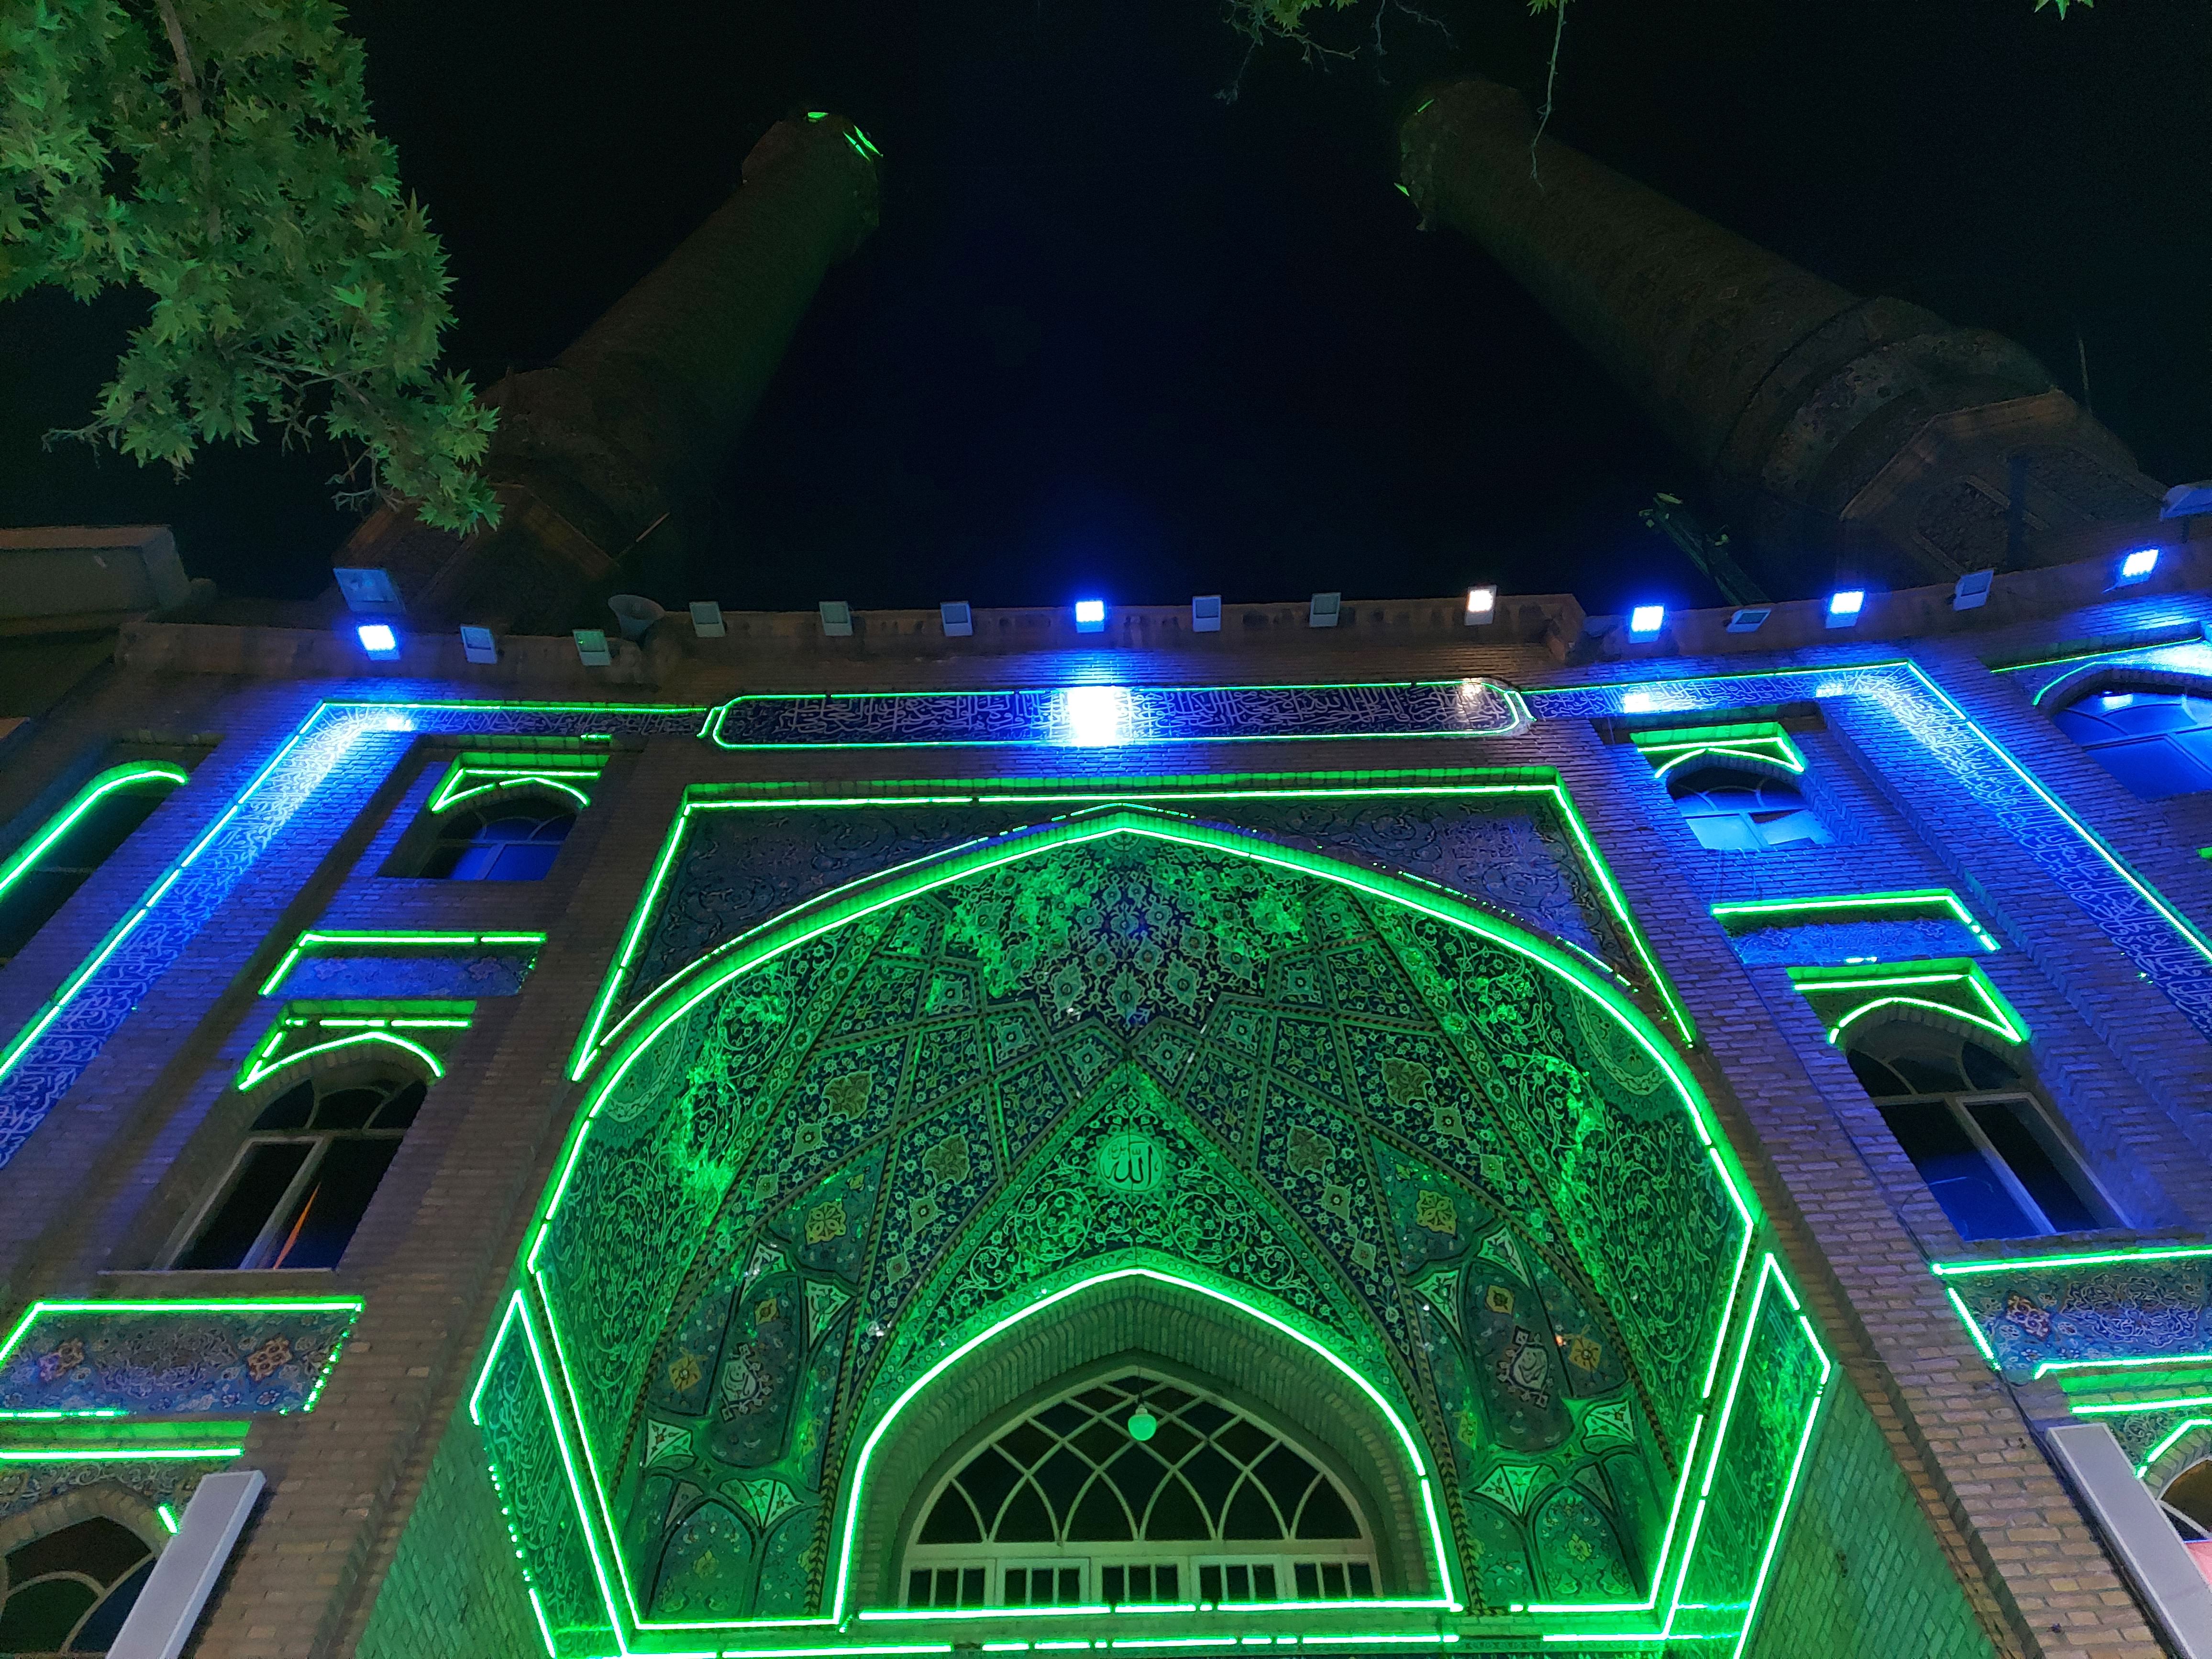 عکس نمونه دوربین واید گلکسی M51 سامسونگ در نور کم - مسجد میدان هفت حوض